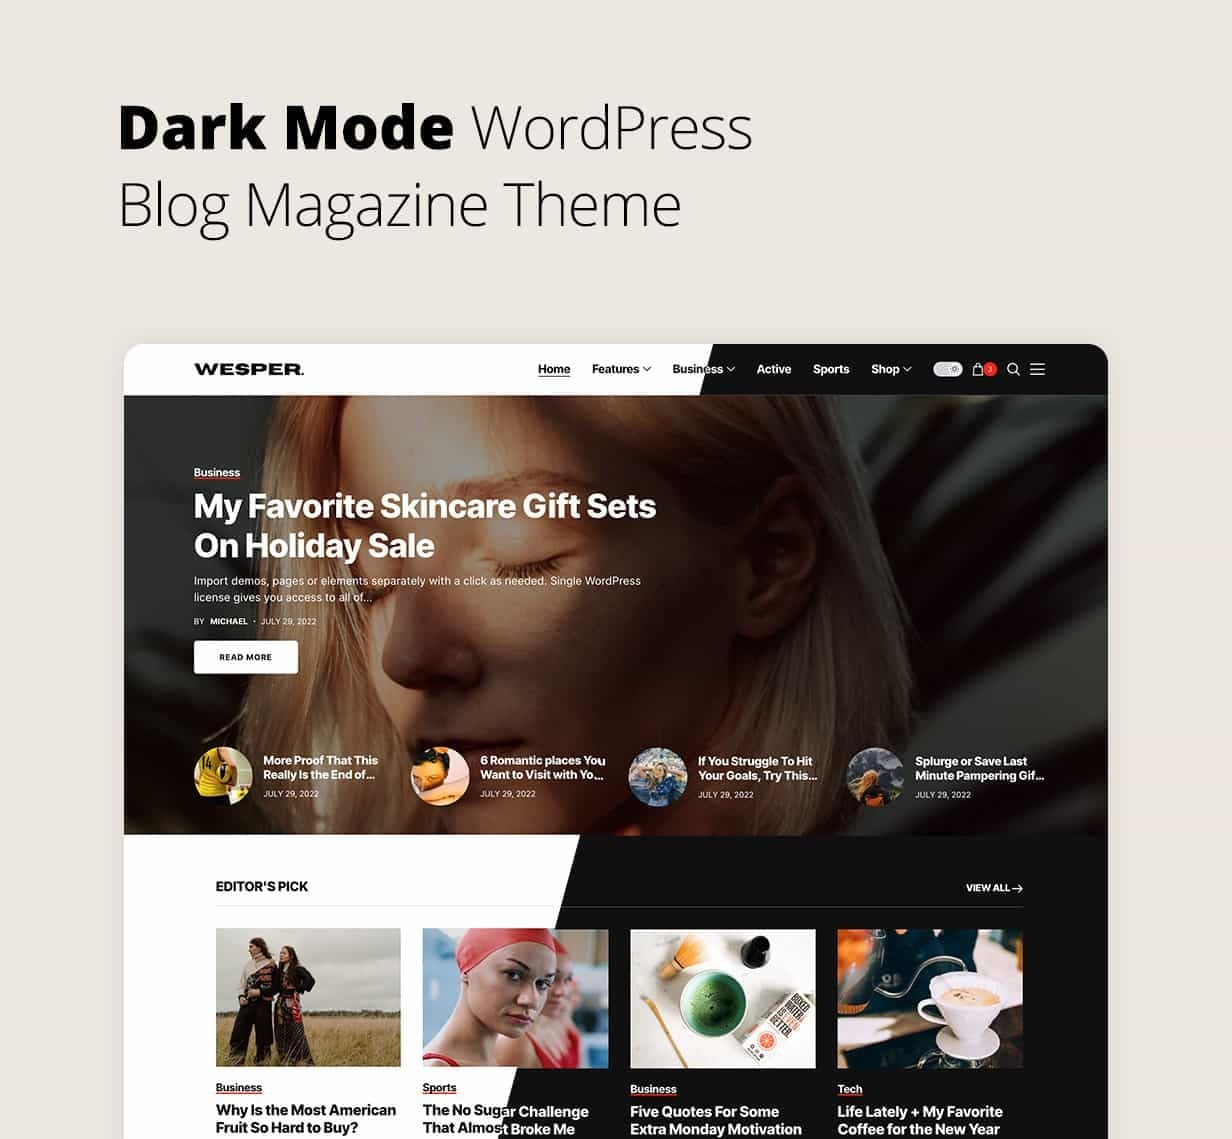 Dark mode wordpress blog magazine theme.